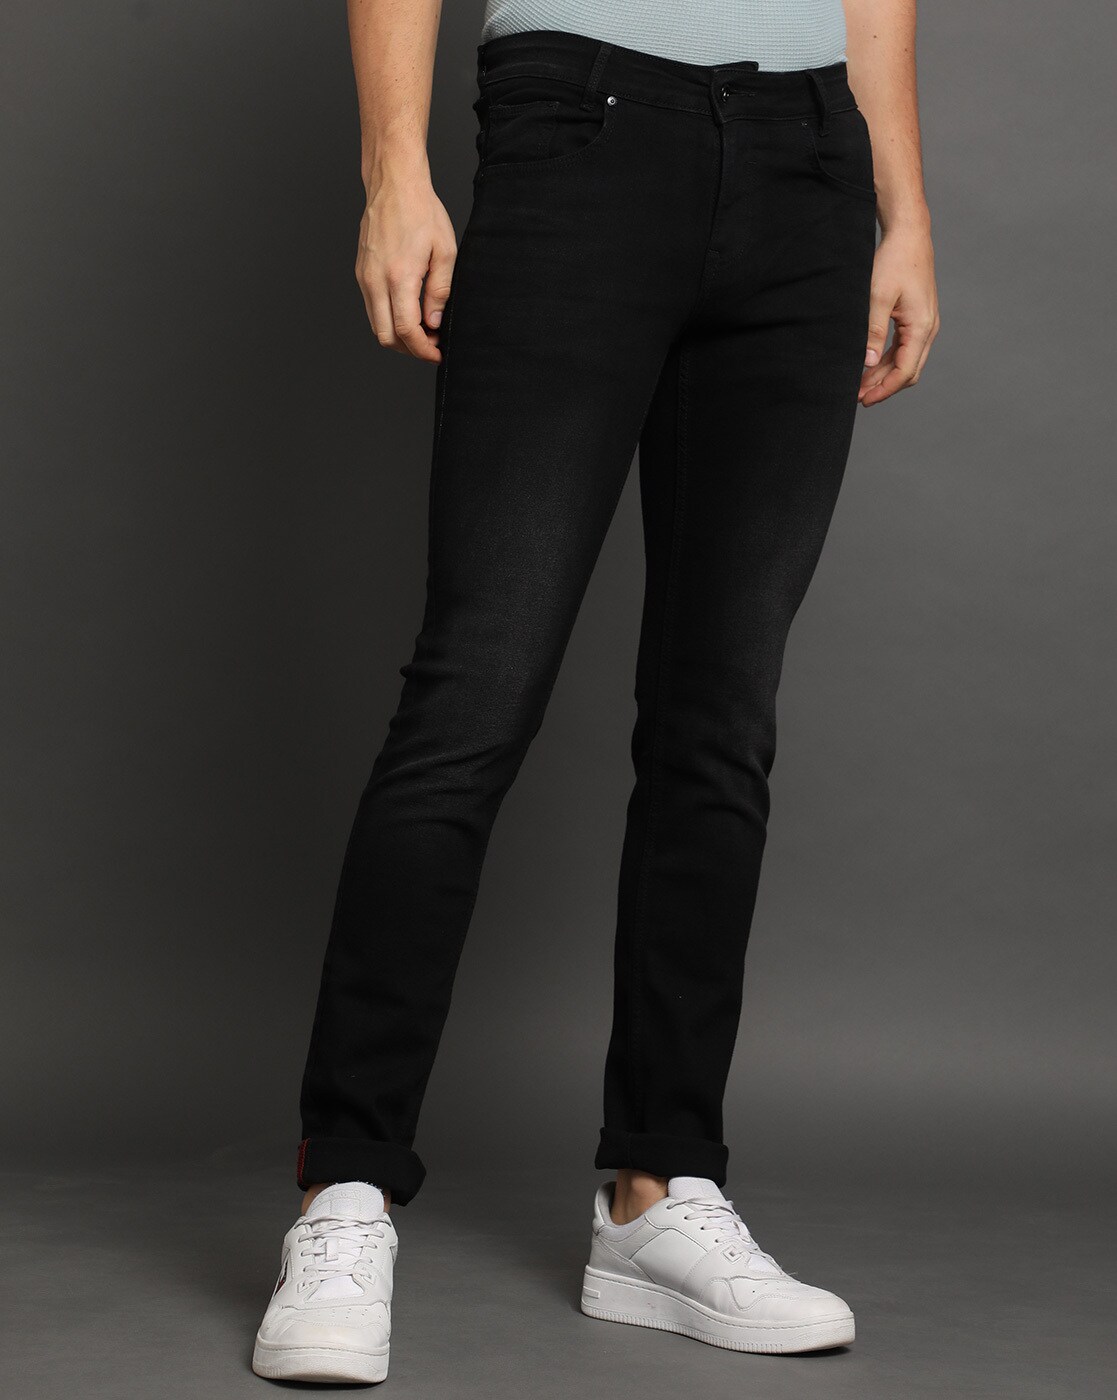 Levis Jeans | 511 Black Slim Fit Jeans 5113250 | Black levi jeans, Mens  jeans, Levi